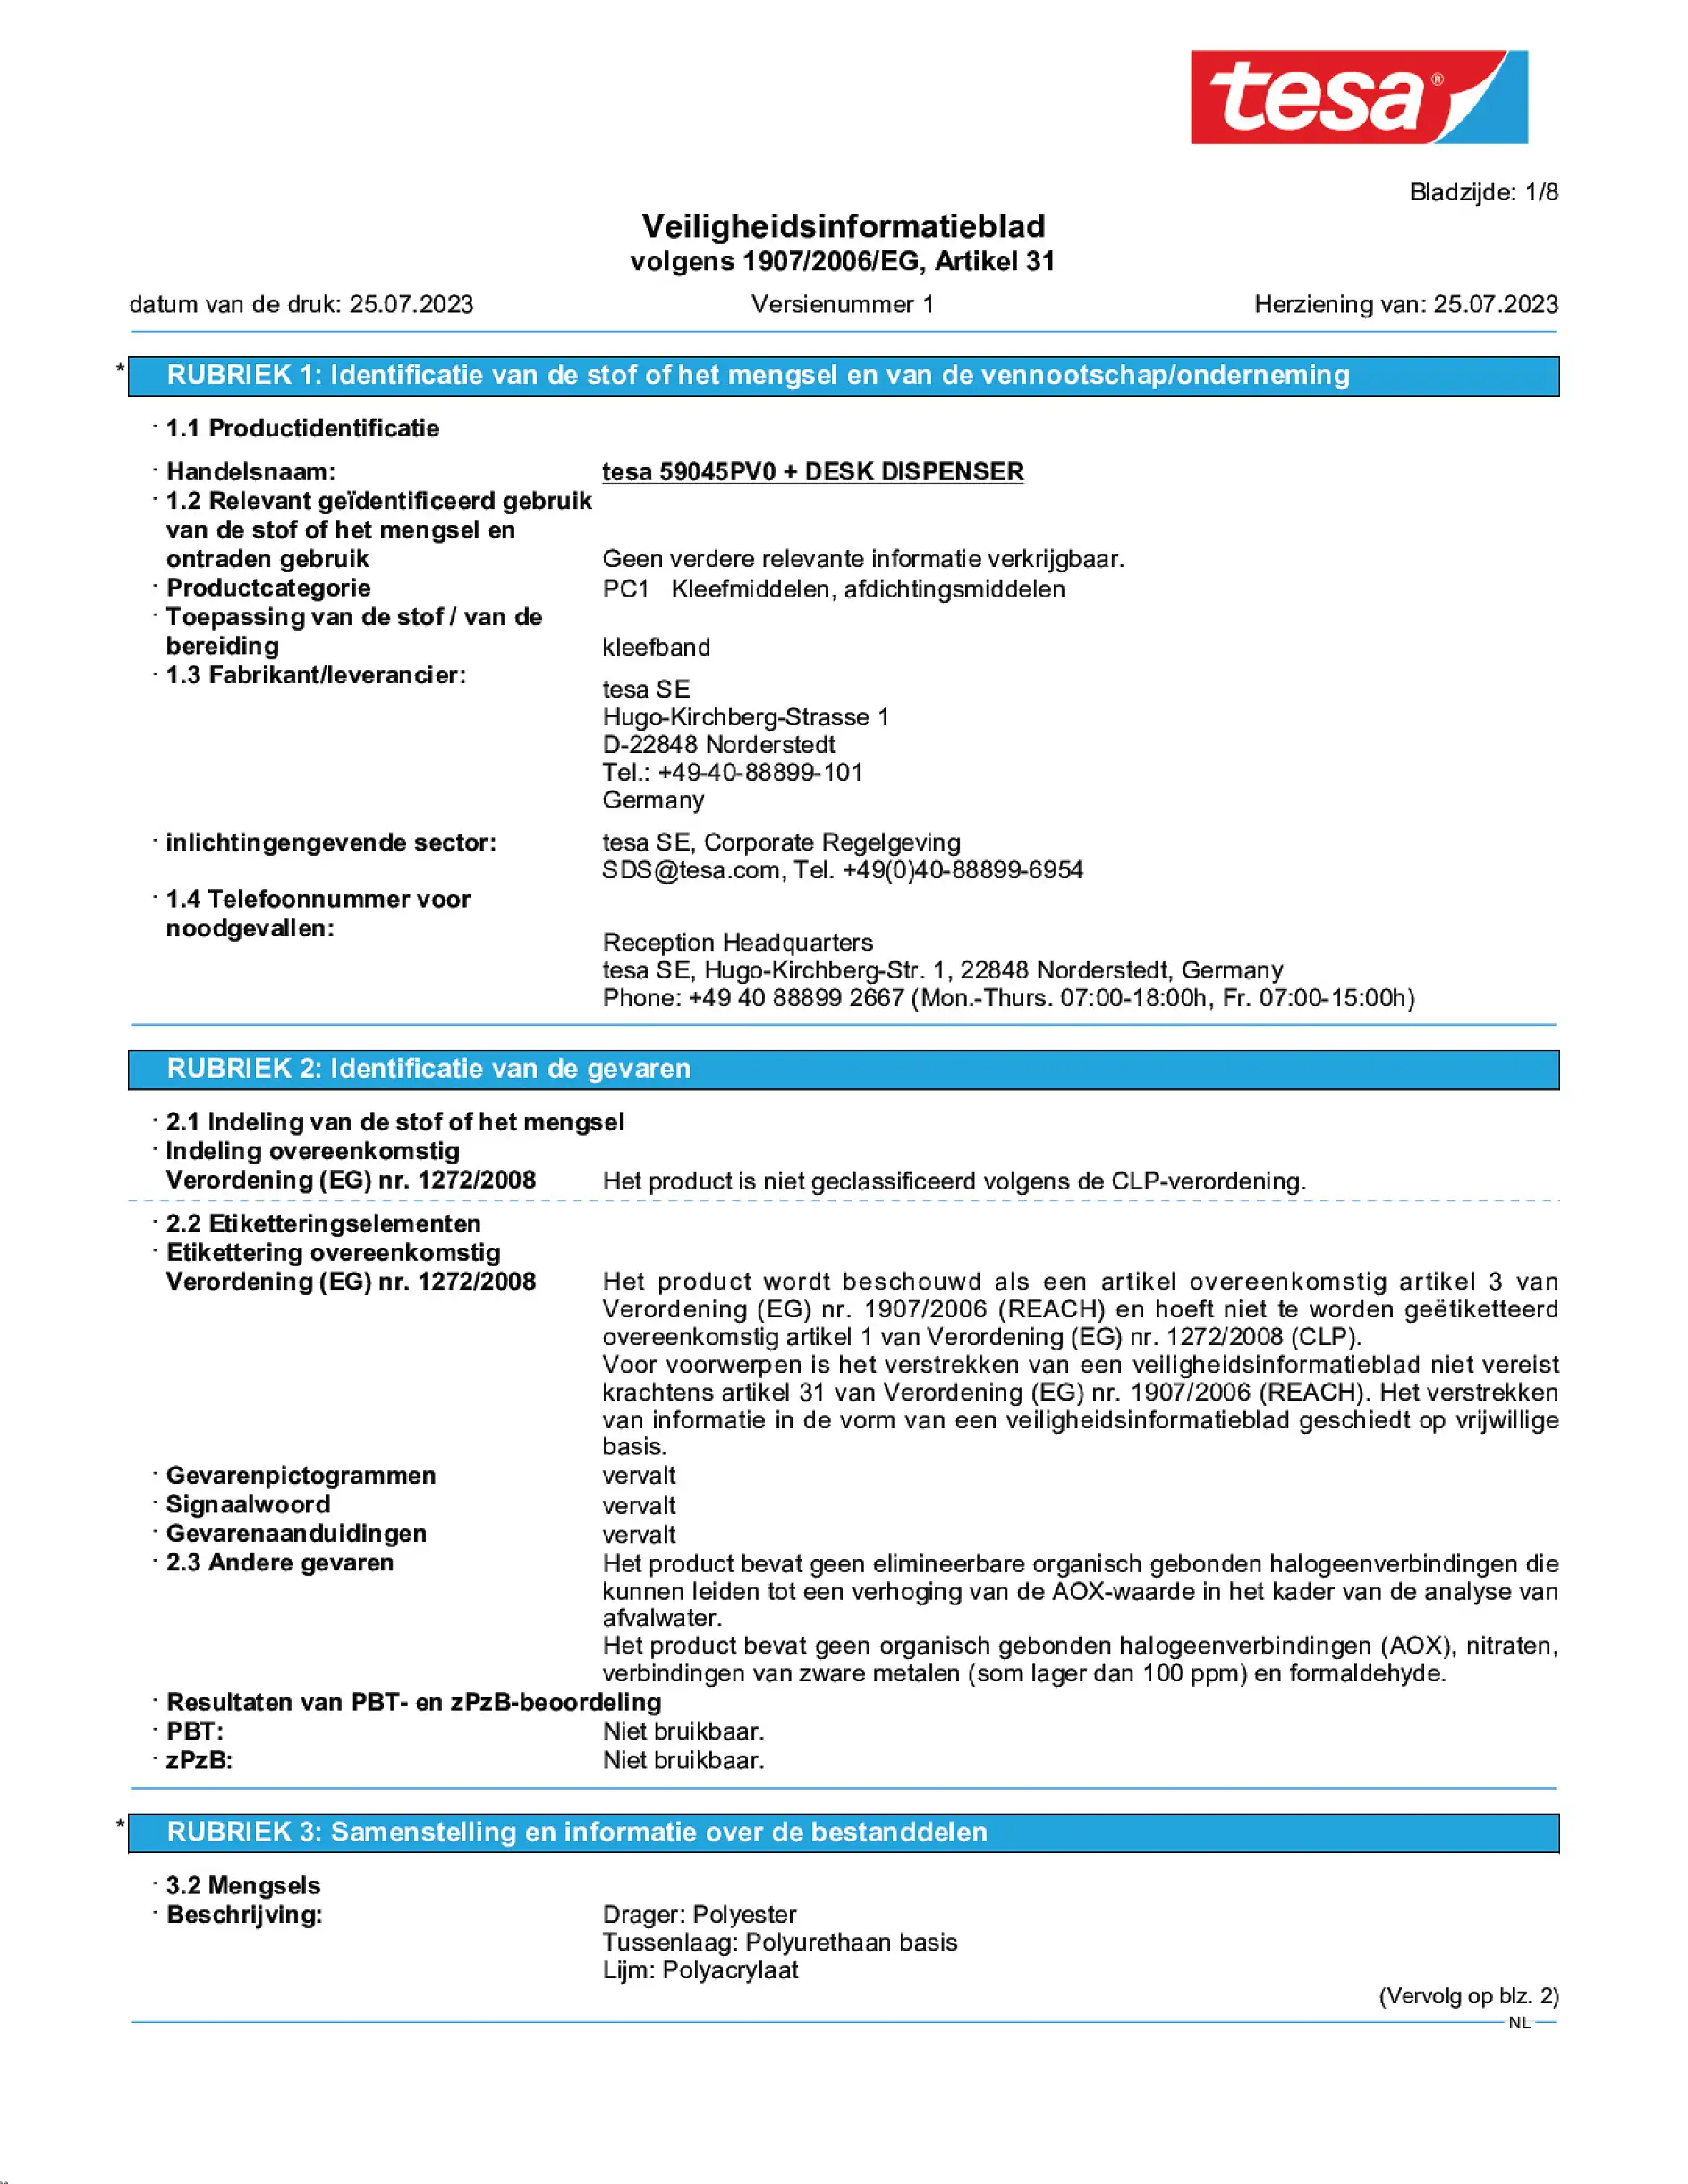 Safety data sheet_tesafilm® 59045_nl-NL_v1